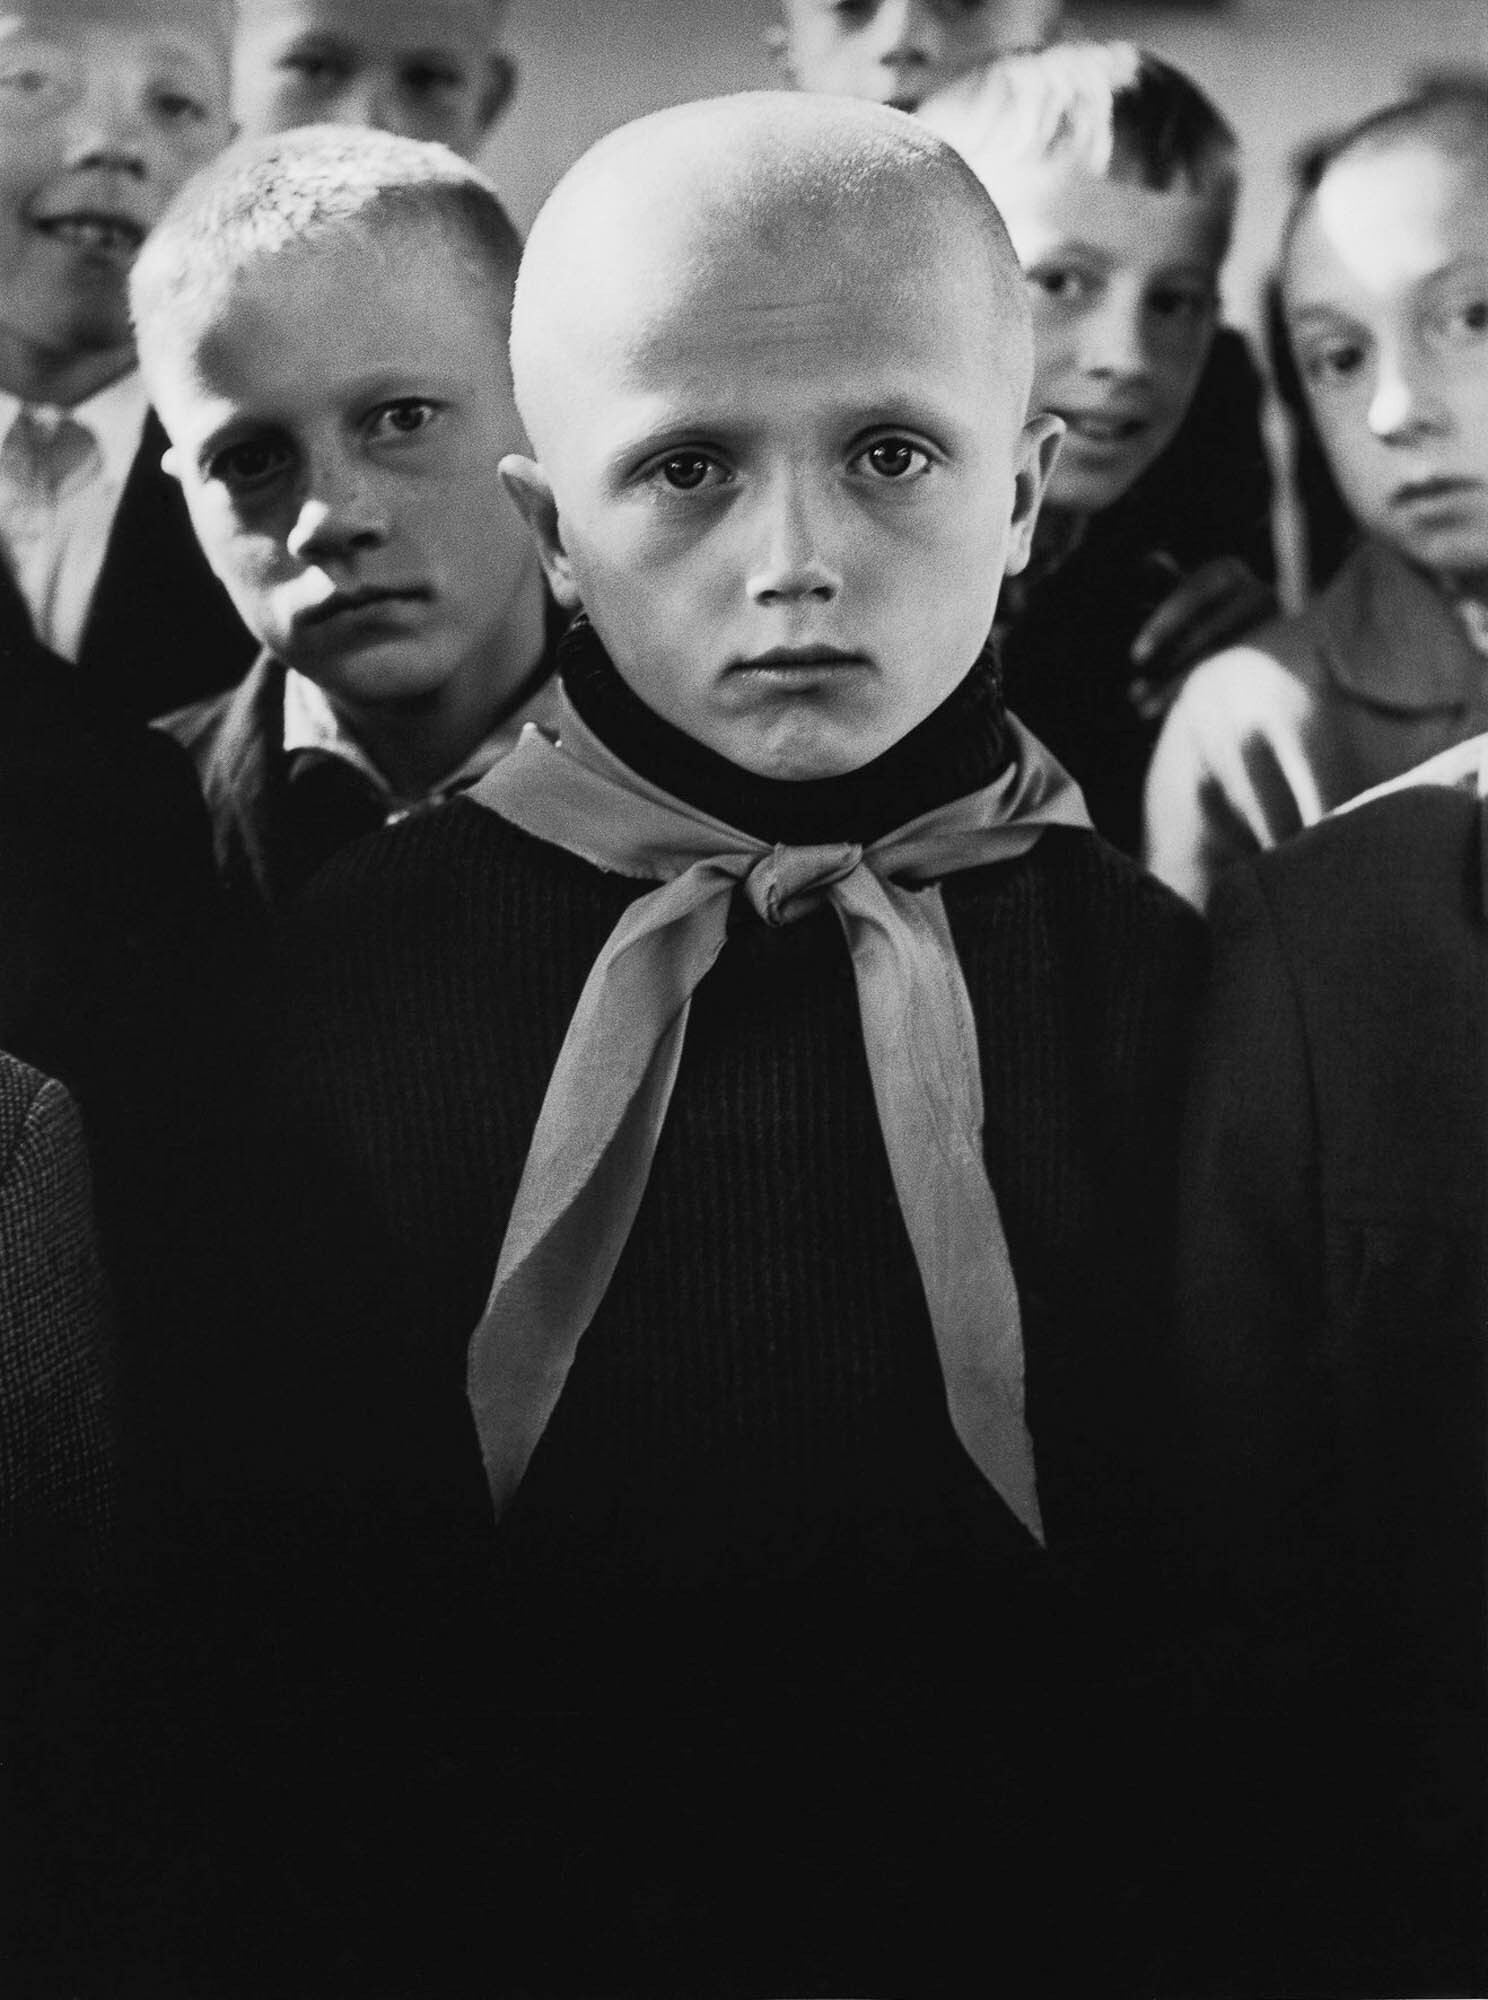 Игналина, Пионер, 1964 год, фотограф Антанас Суткус